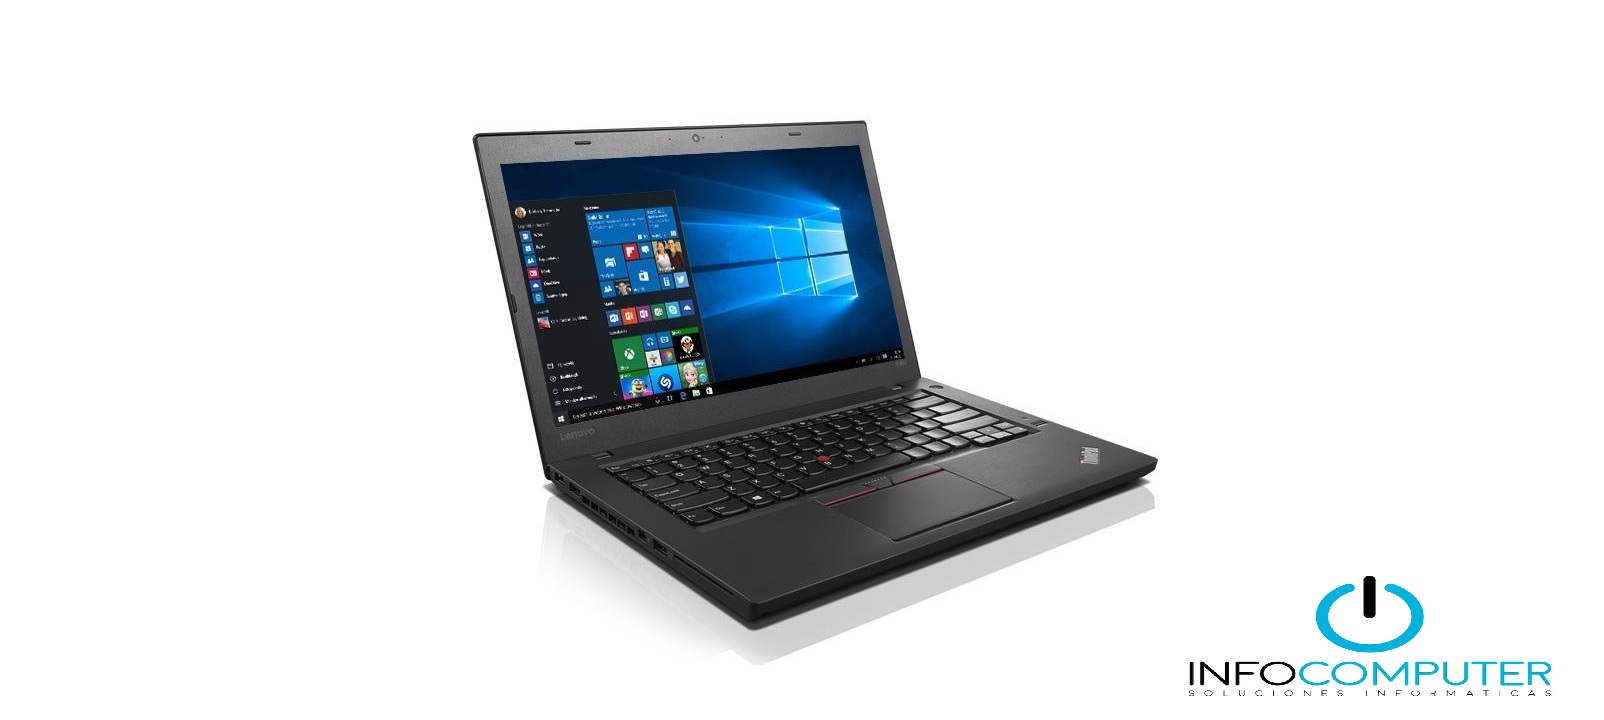 Analizamos el Lenovo ThinkPad T460: Portátil con excelente relación calidad precio